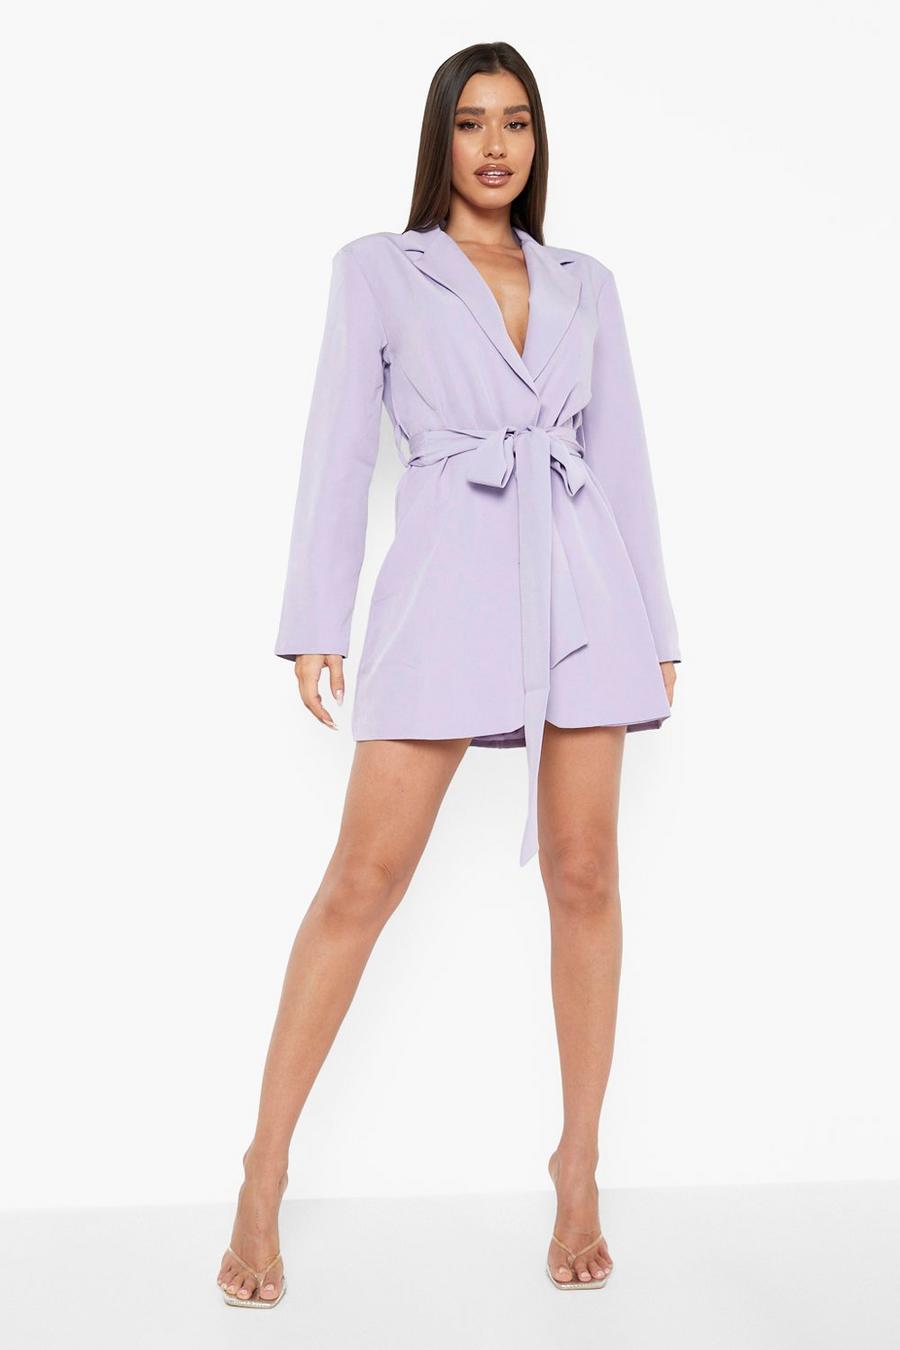 Lilac purple Obi Tie Waist Blazer Dress